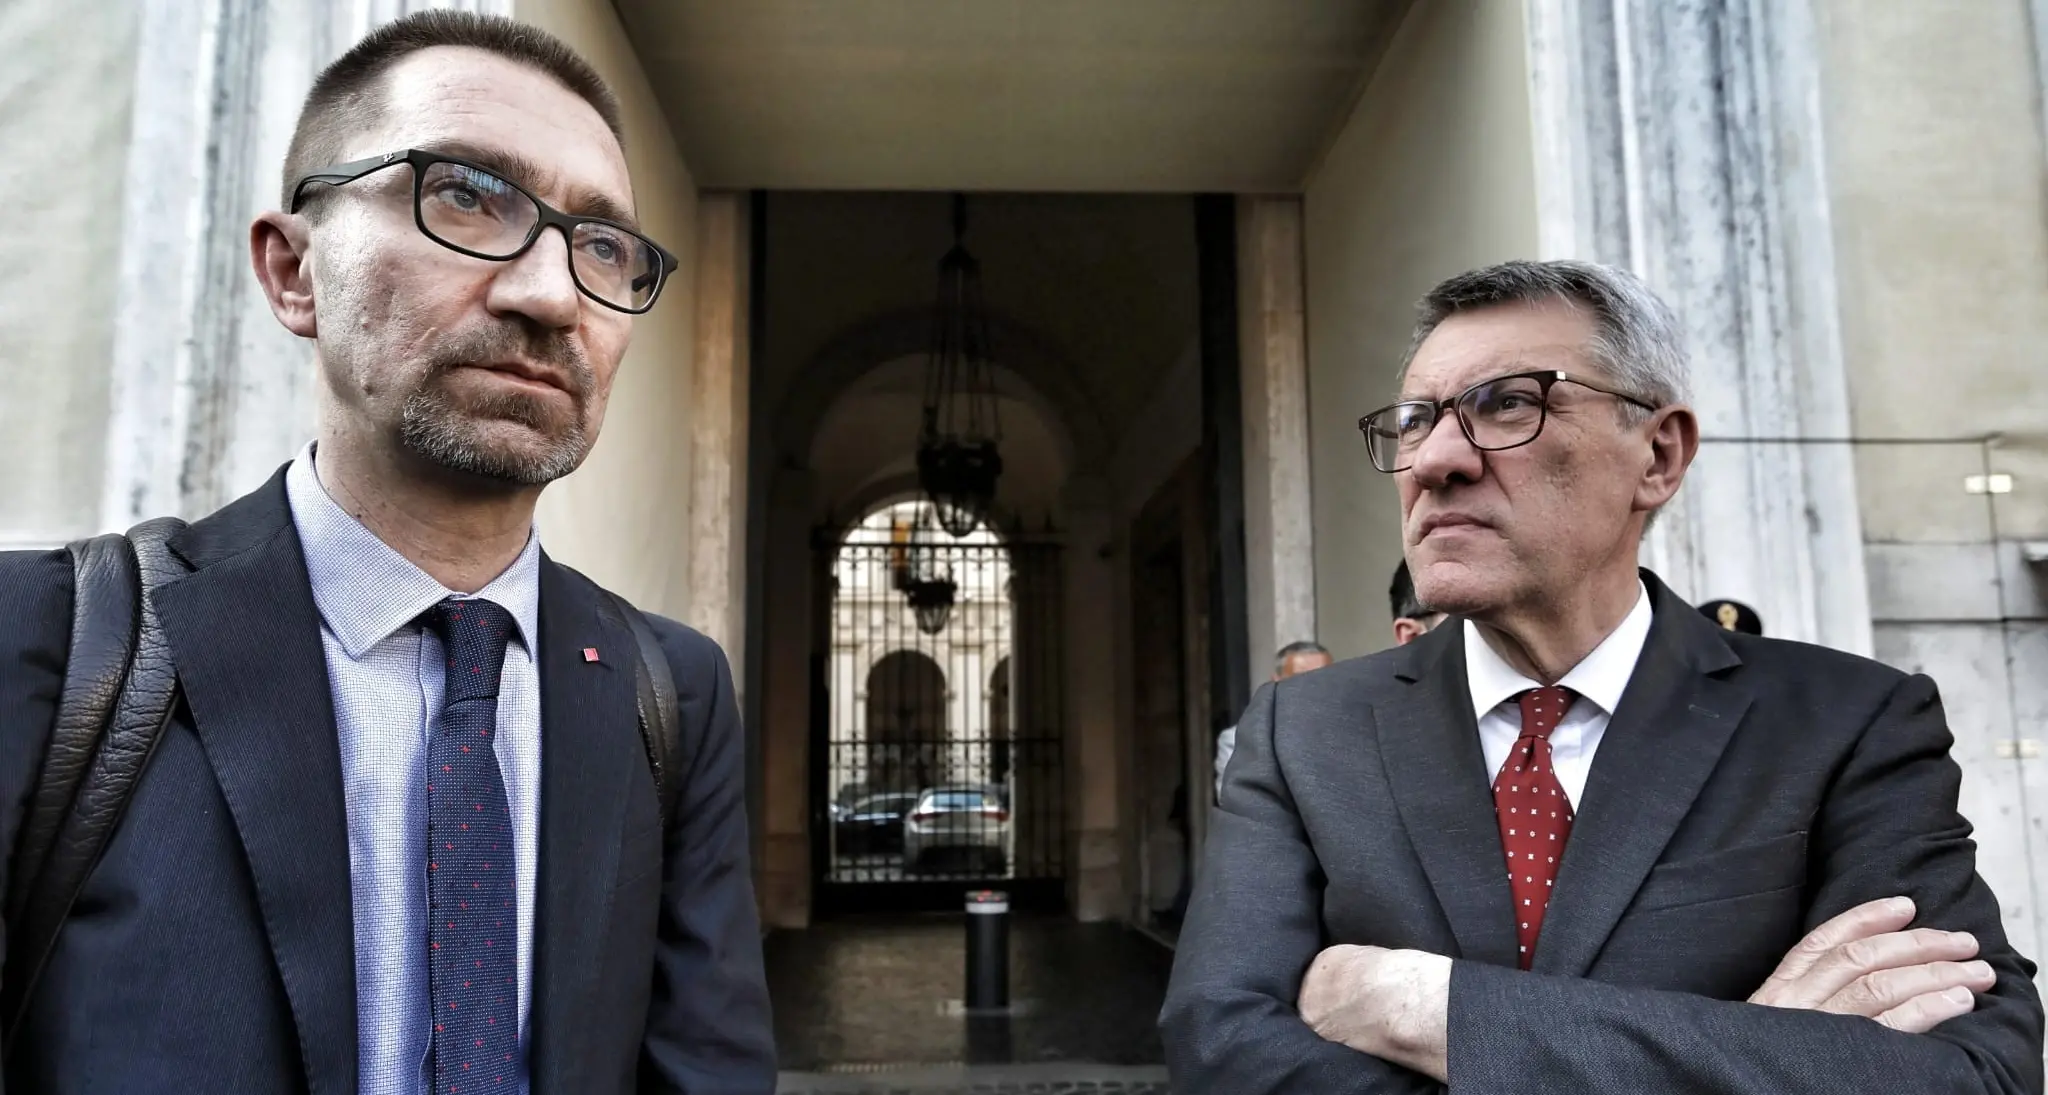 Dal governo nessuna risposta. Landini: basta austerity in Italia e in Europa, la mobilitazione continua